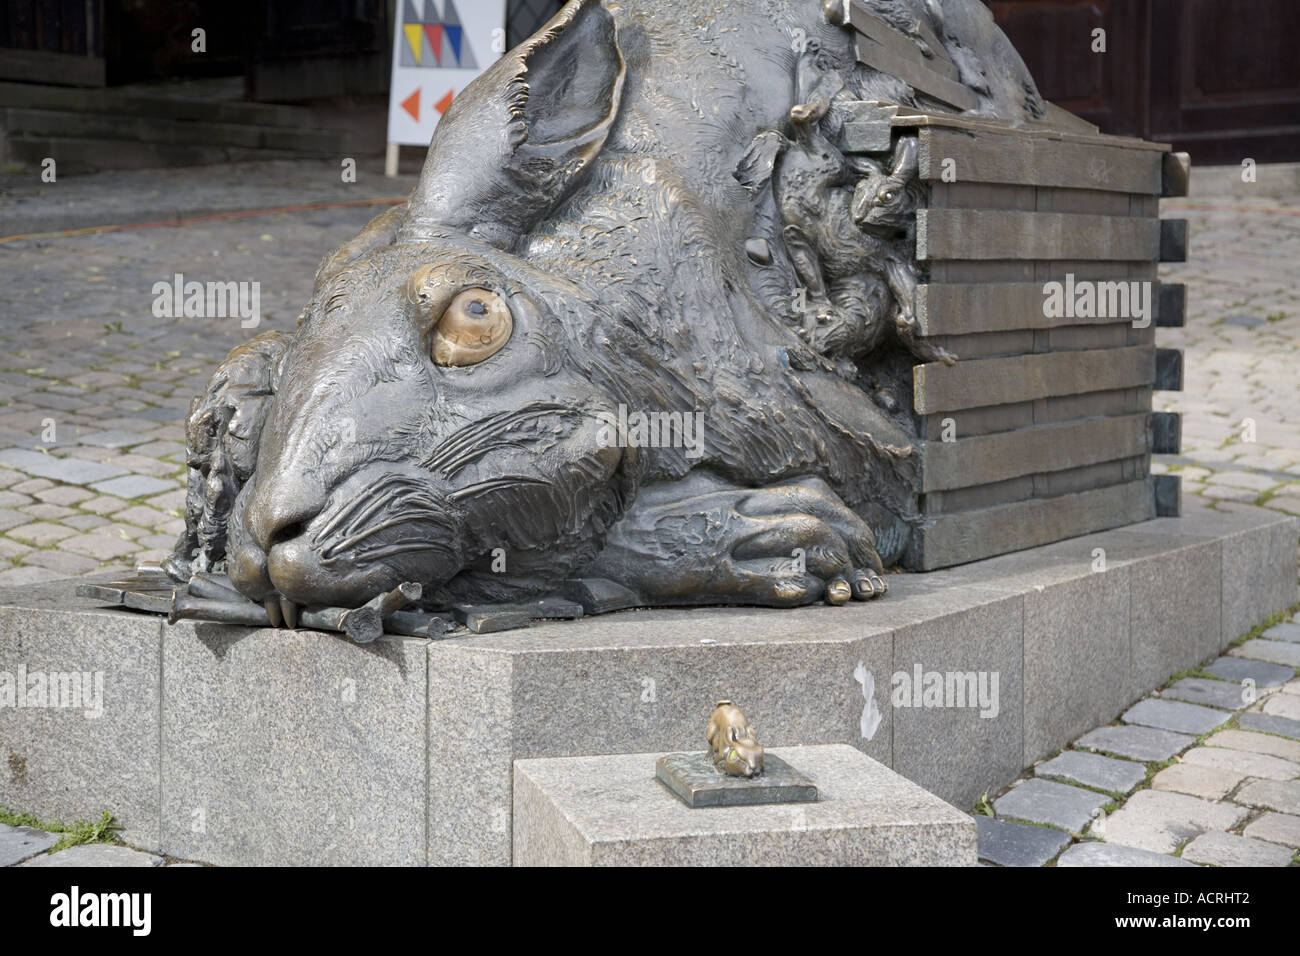 "Le lièvre", un hommage à Dürer par Jürgen Goetz, 1984, Sculpture en bronze, Tiergärtnerplatz Pilatushaus, Nuremberg, Allemagne Banque D'Images